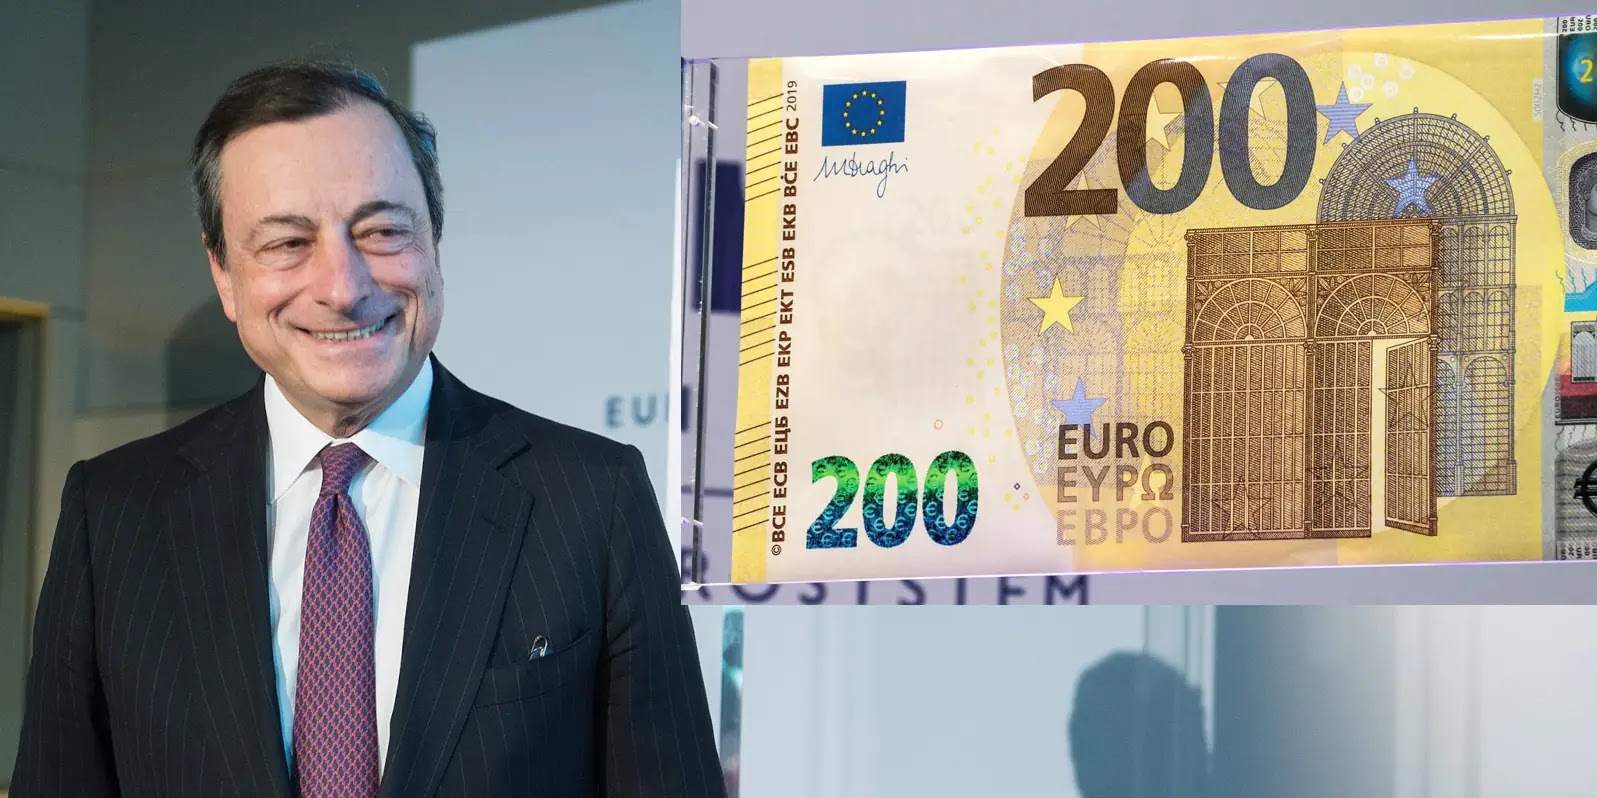 Mario Draghi regala 200 euro